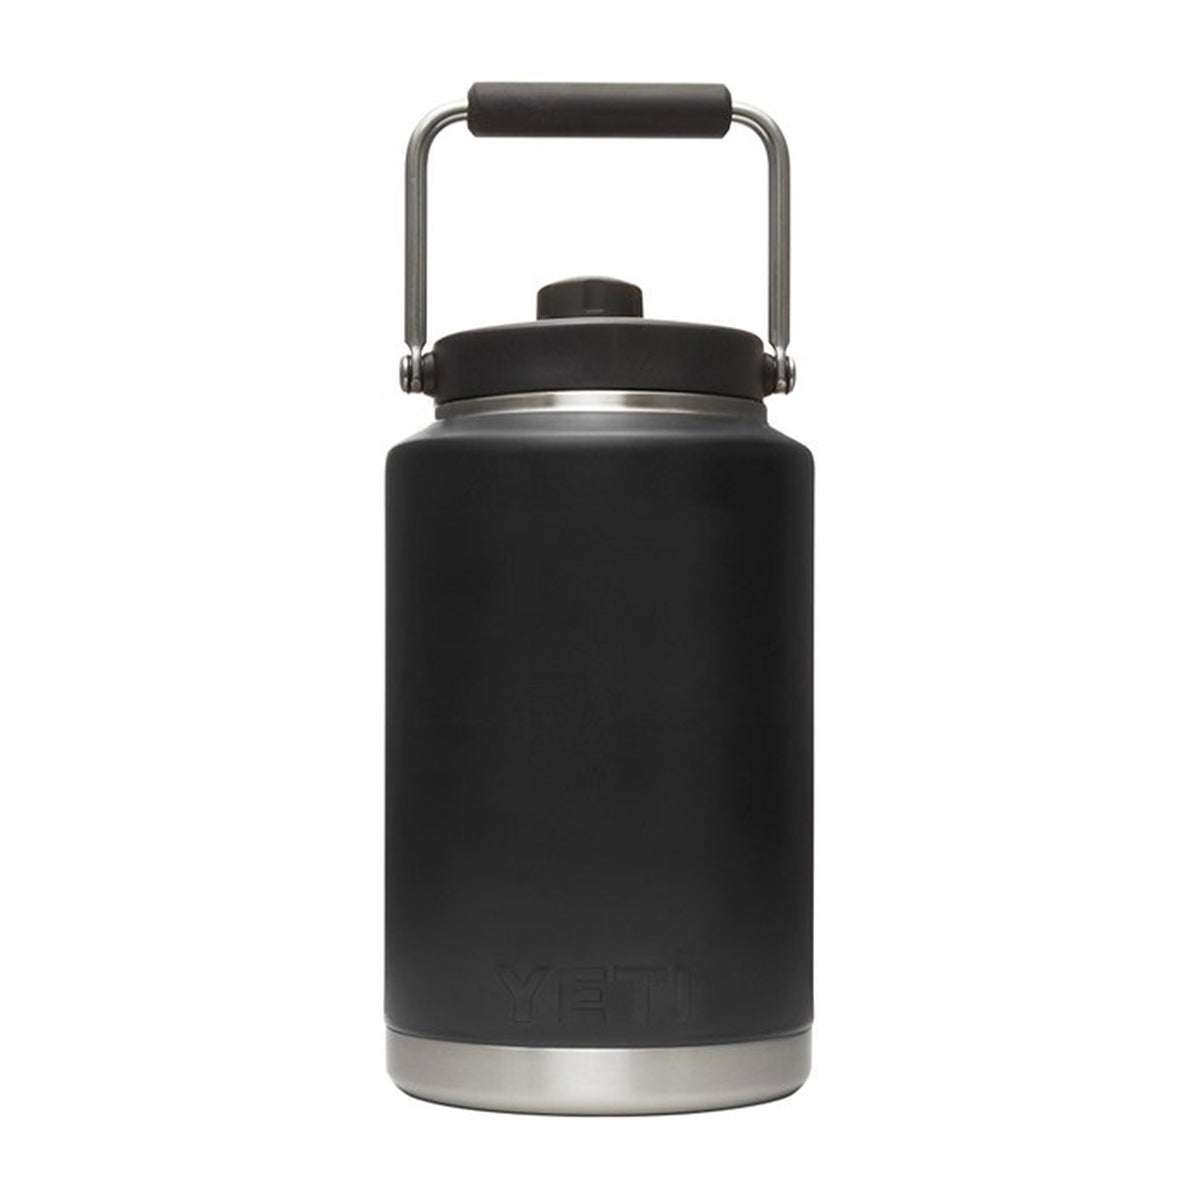 http://ecscoffee.com/cdn/shop/products/Yeti-one-gallon-jug-black-2_1200x1200.jpg?v=1616607862